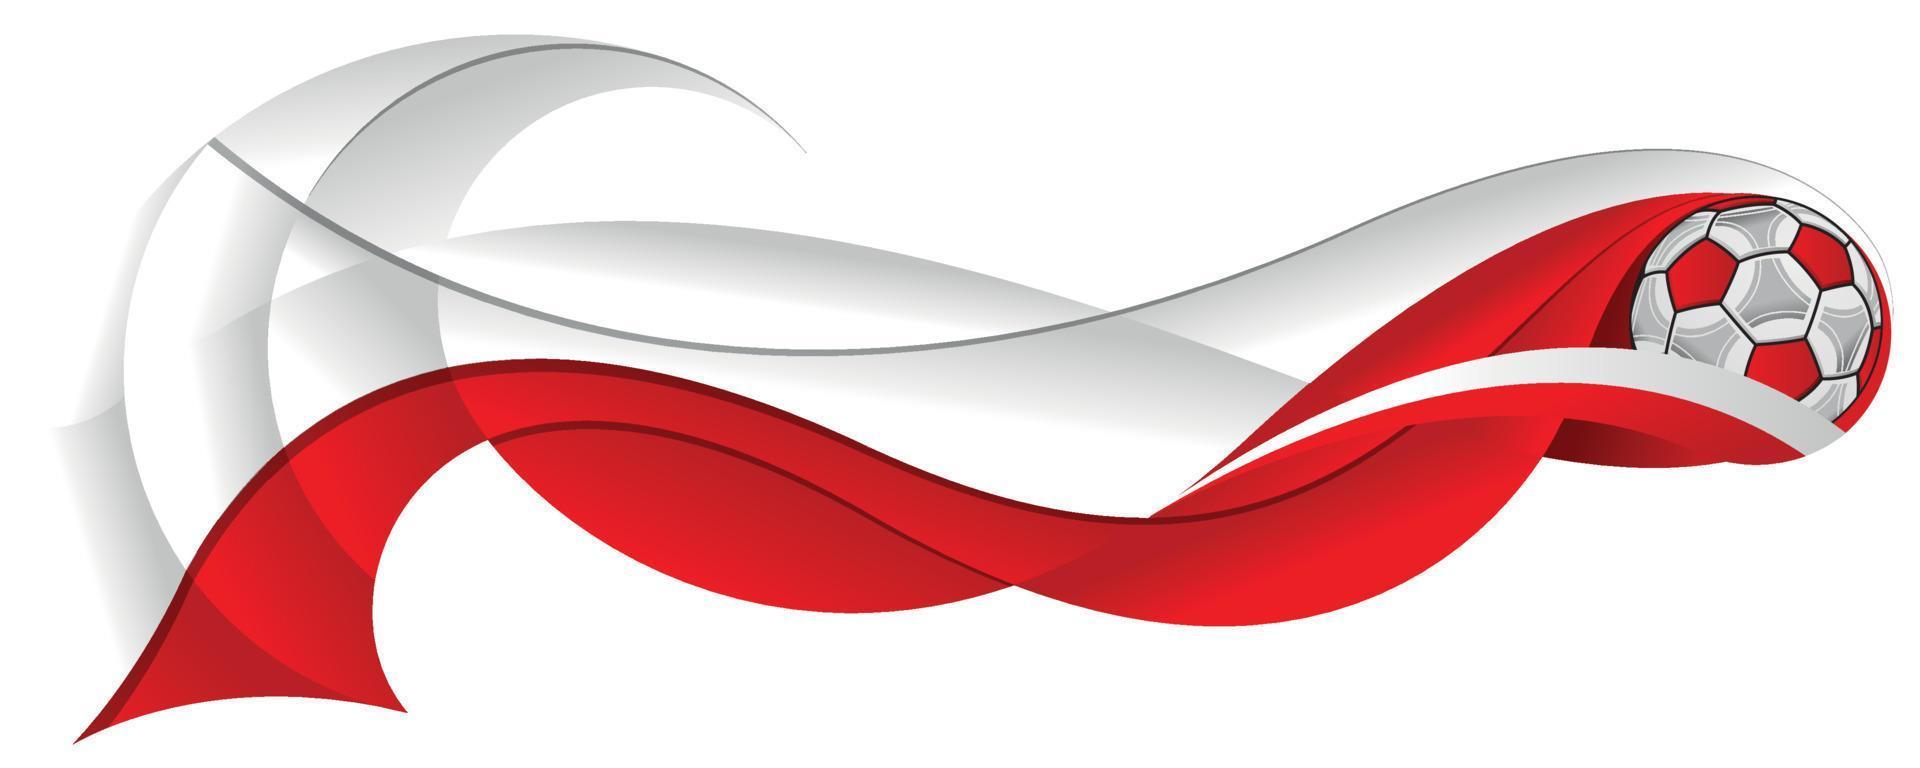 ballon de football rouge et blanc laissant une traînée abstraite sous la forme d'une ondulation aux couleurs du drapeau de la pologne sur fond blanc vecteur